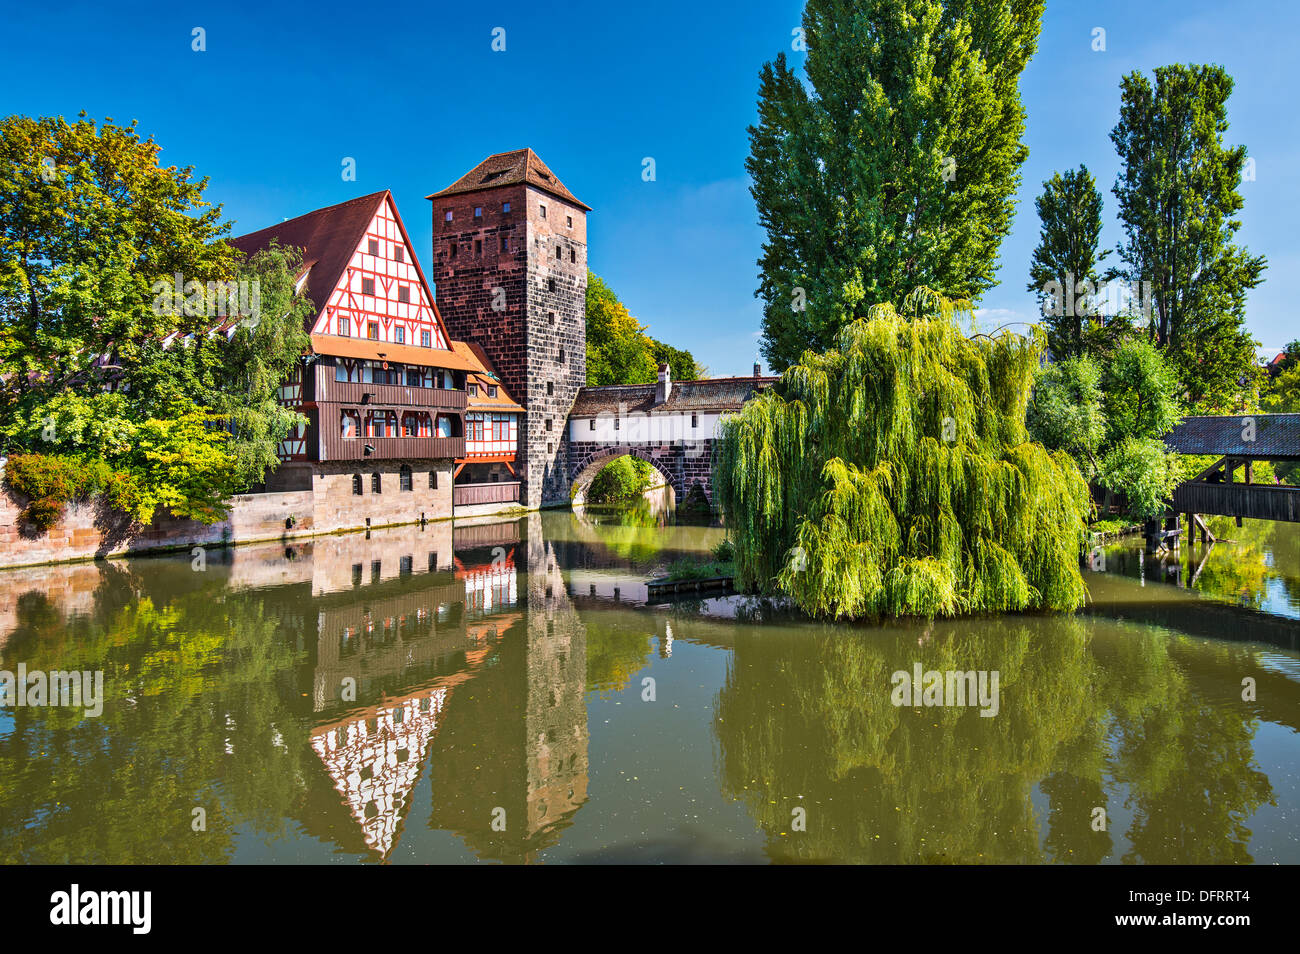 Executioner's bridge in Nuremberg, Germany Stock Photo